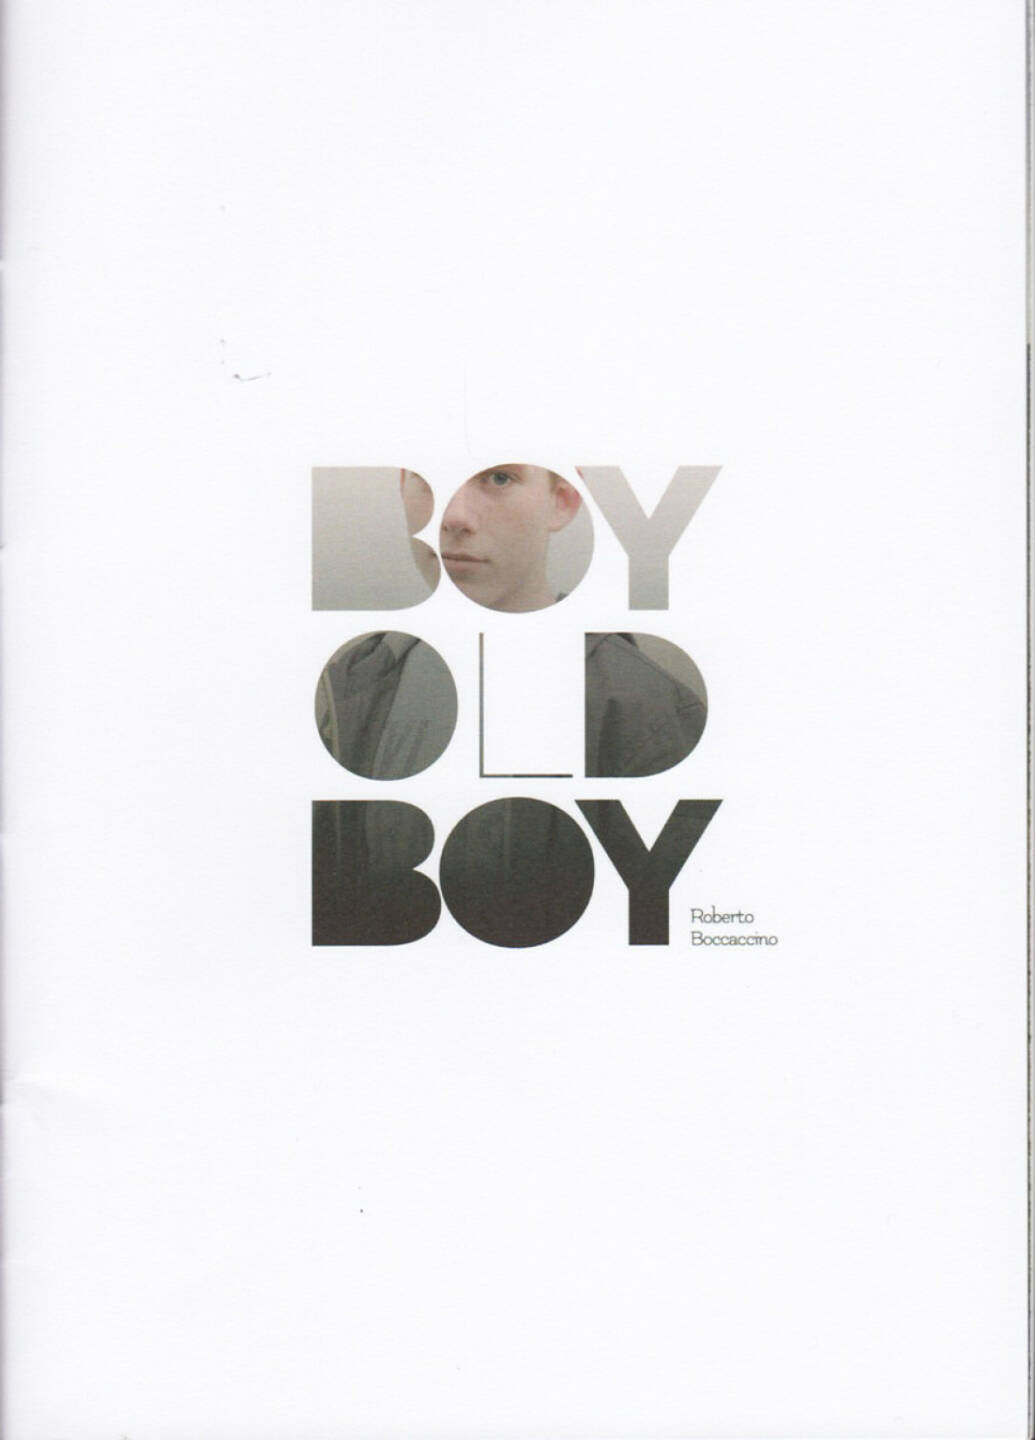 Roberto Boccaccino - Boy Old Boy, Witty kiwi, 2014, Cover - http://josefchladek.com/book/roberto_boccaccino_-_boy_old_boy